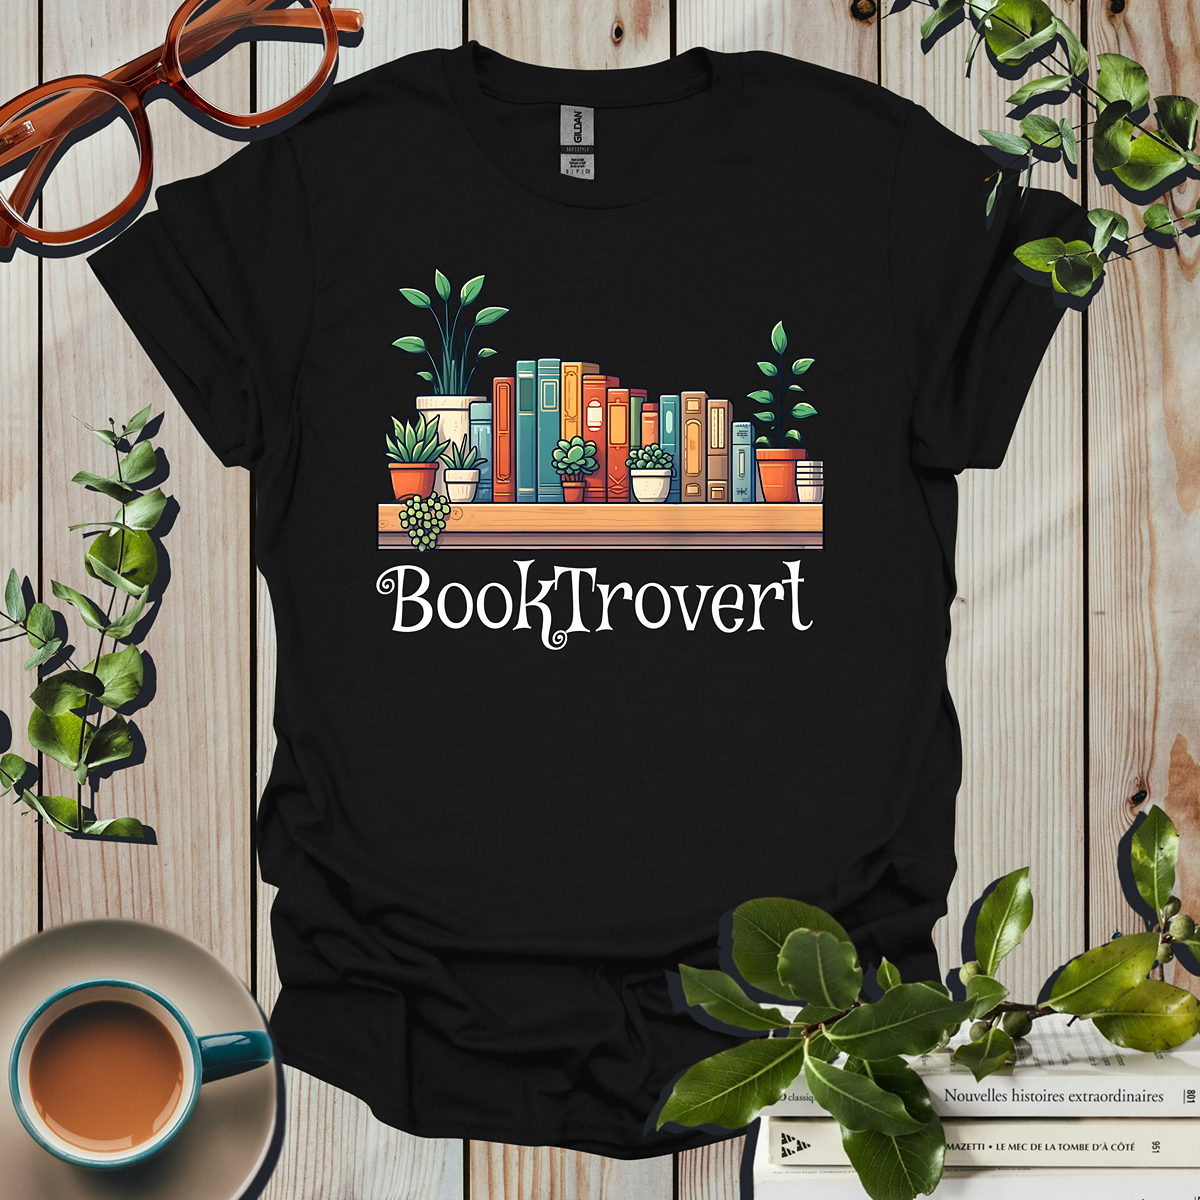 Booktrovert T-Shirt